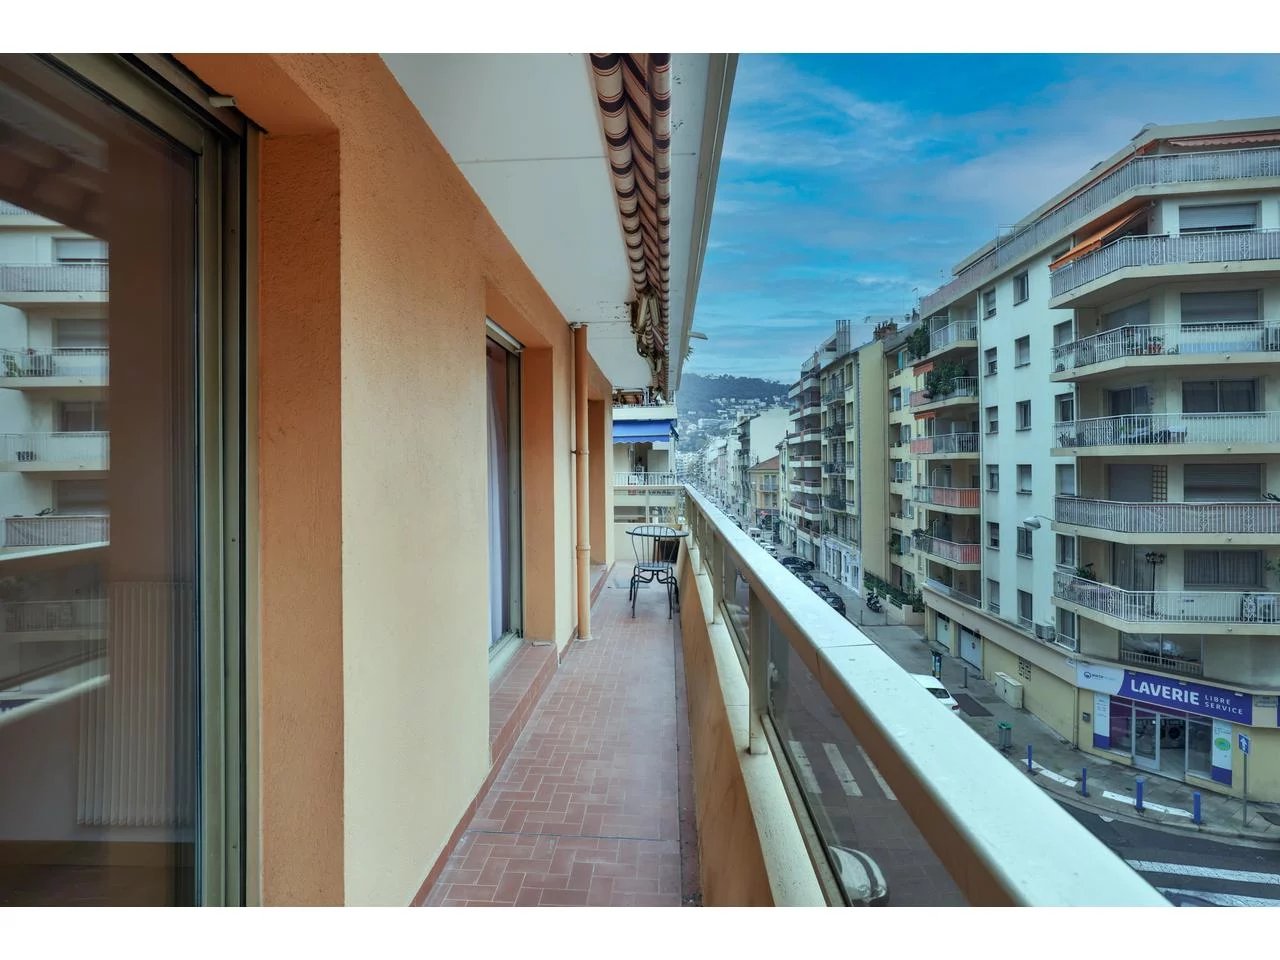 Appartement  3 Cuartos 81.11m2  En venta   410 000 €